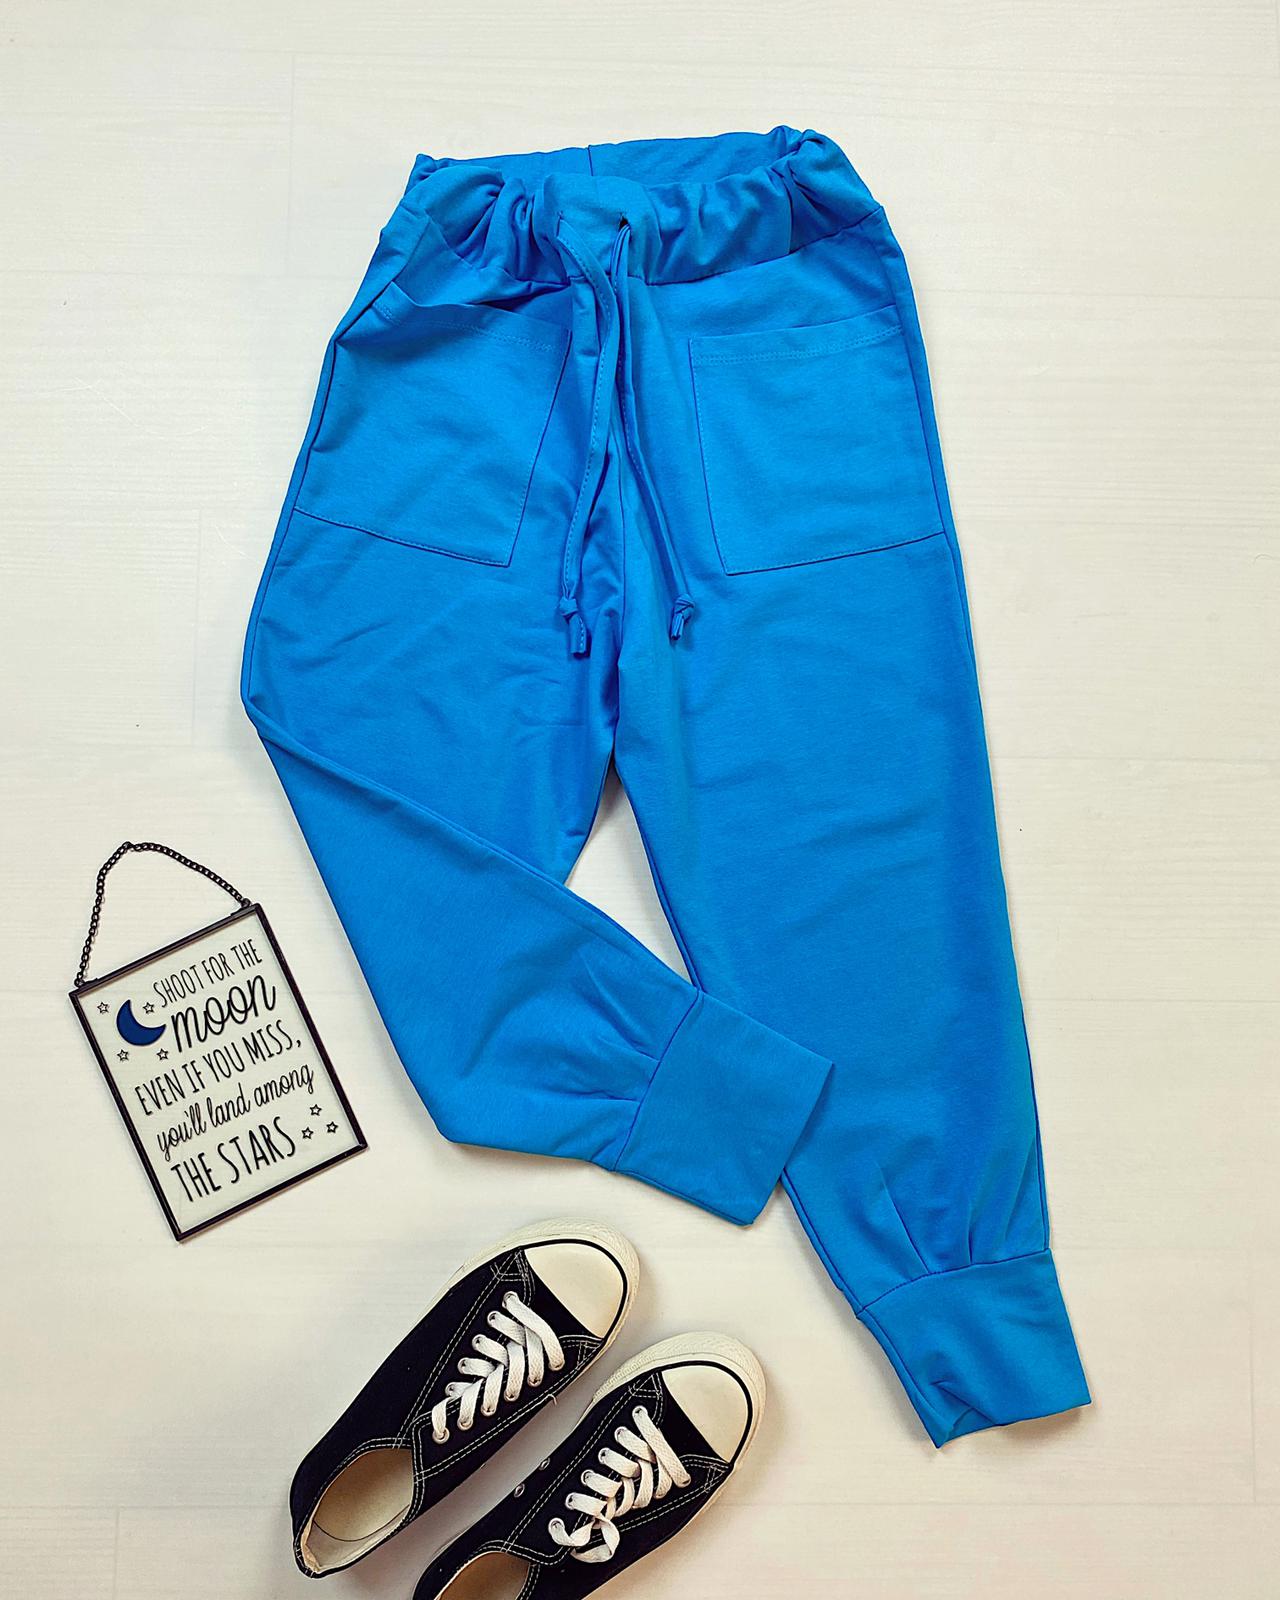 Pantaloni dama casual-sport albastri cu buzunare image2